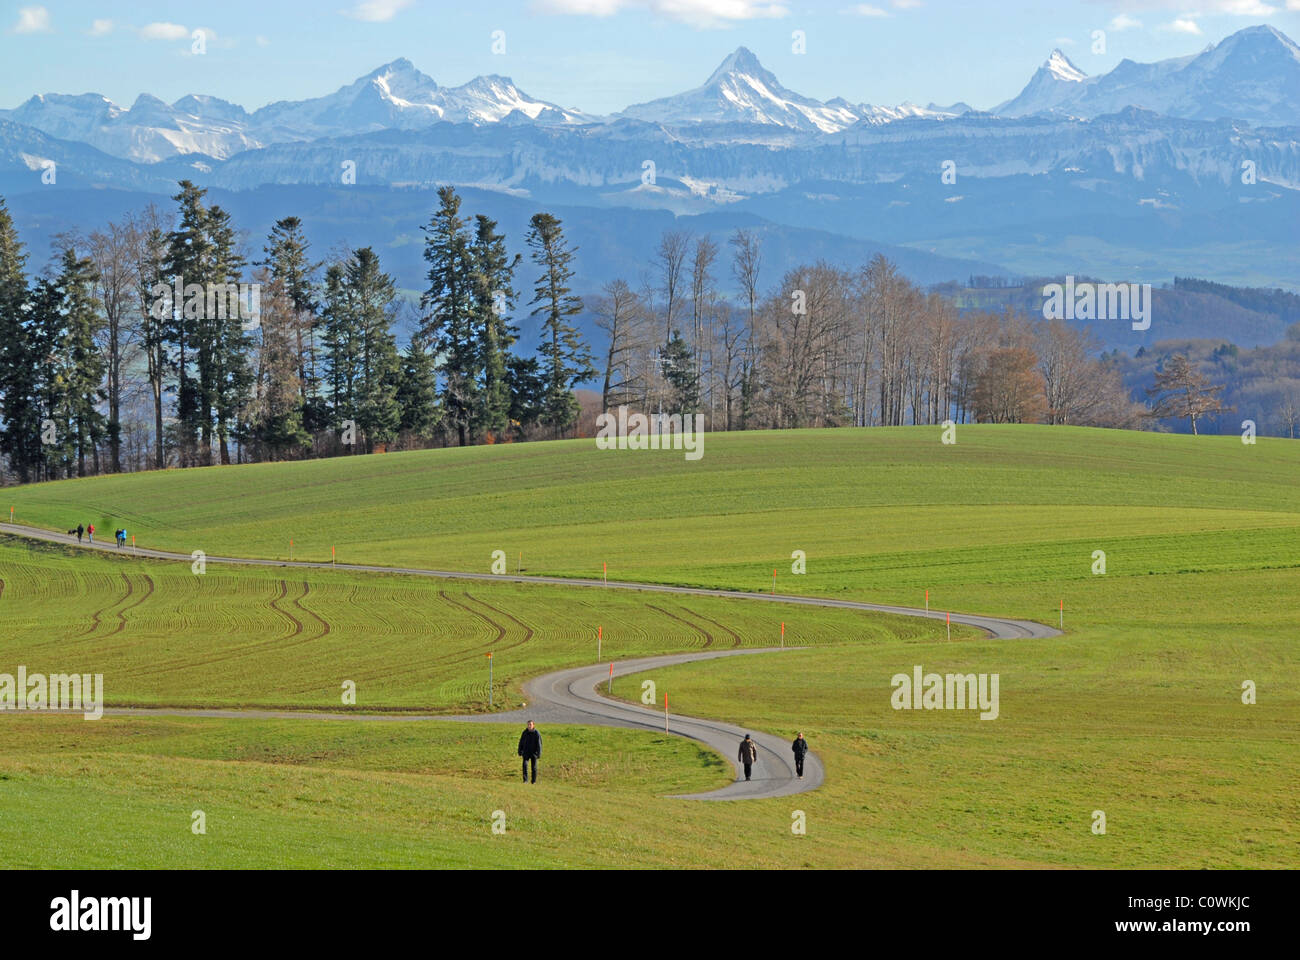 Menschen zu Fuß Weg durch Wiese auf Gurten, mit Berner Alpen, Bern, Schweiz  Stockfotografie - Alamy